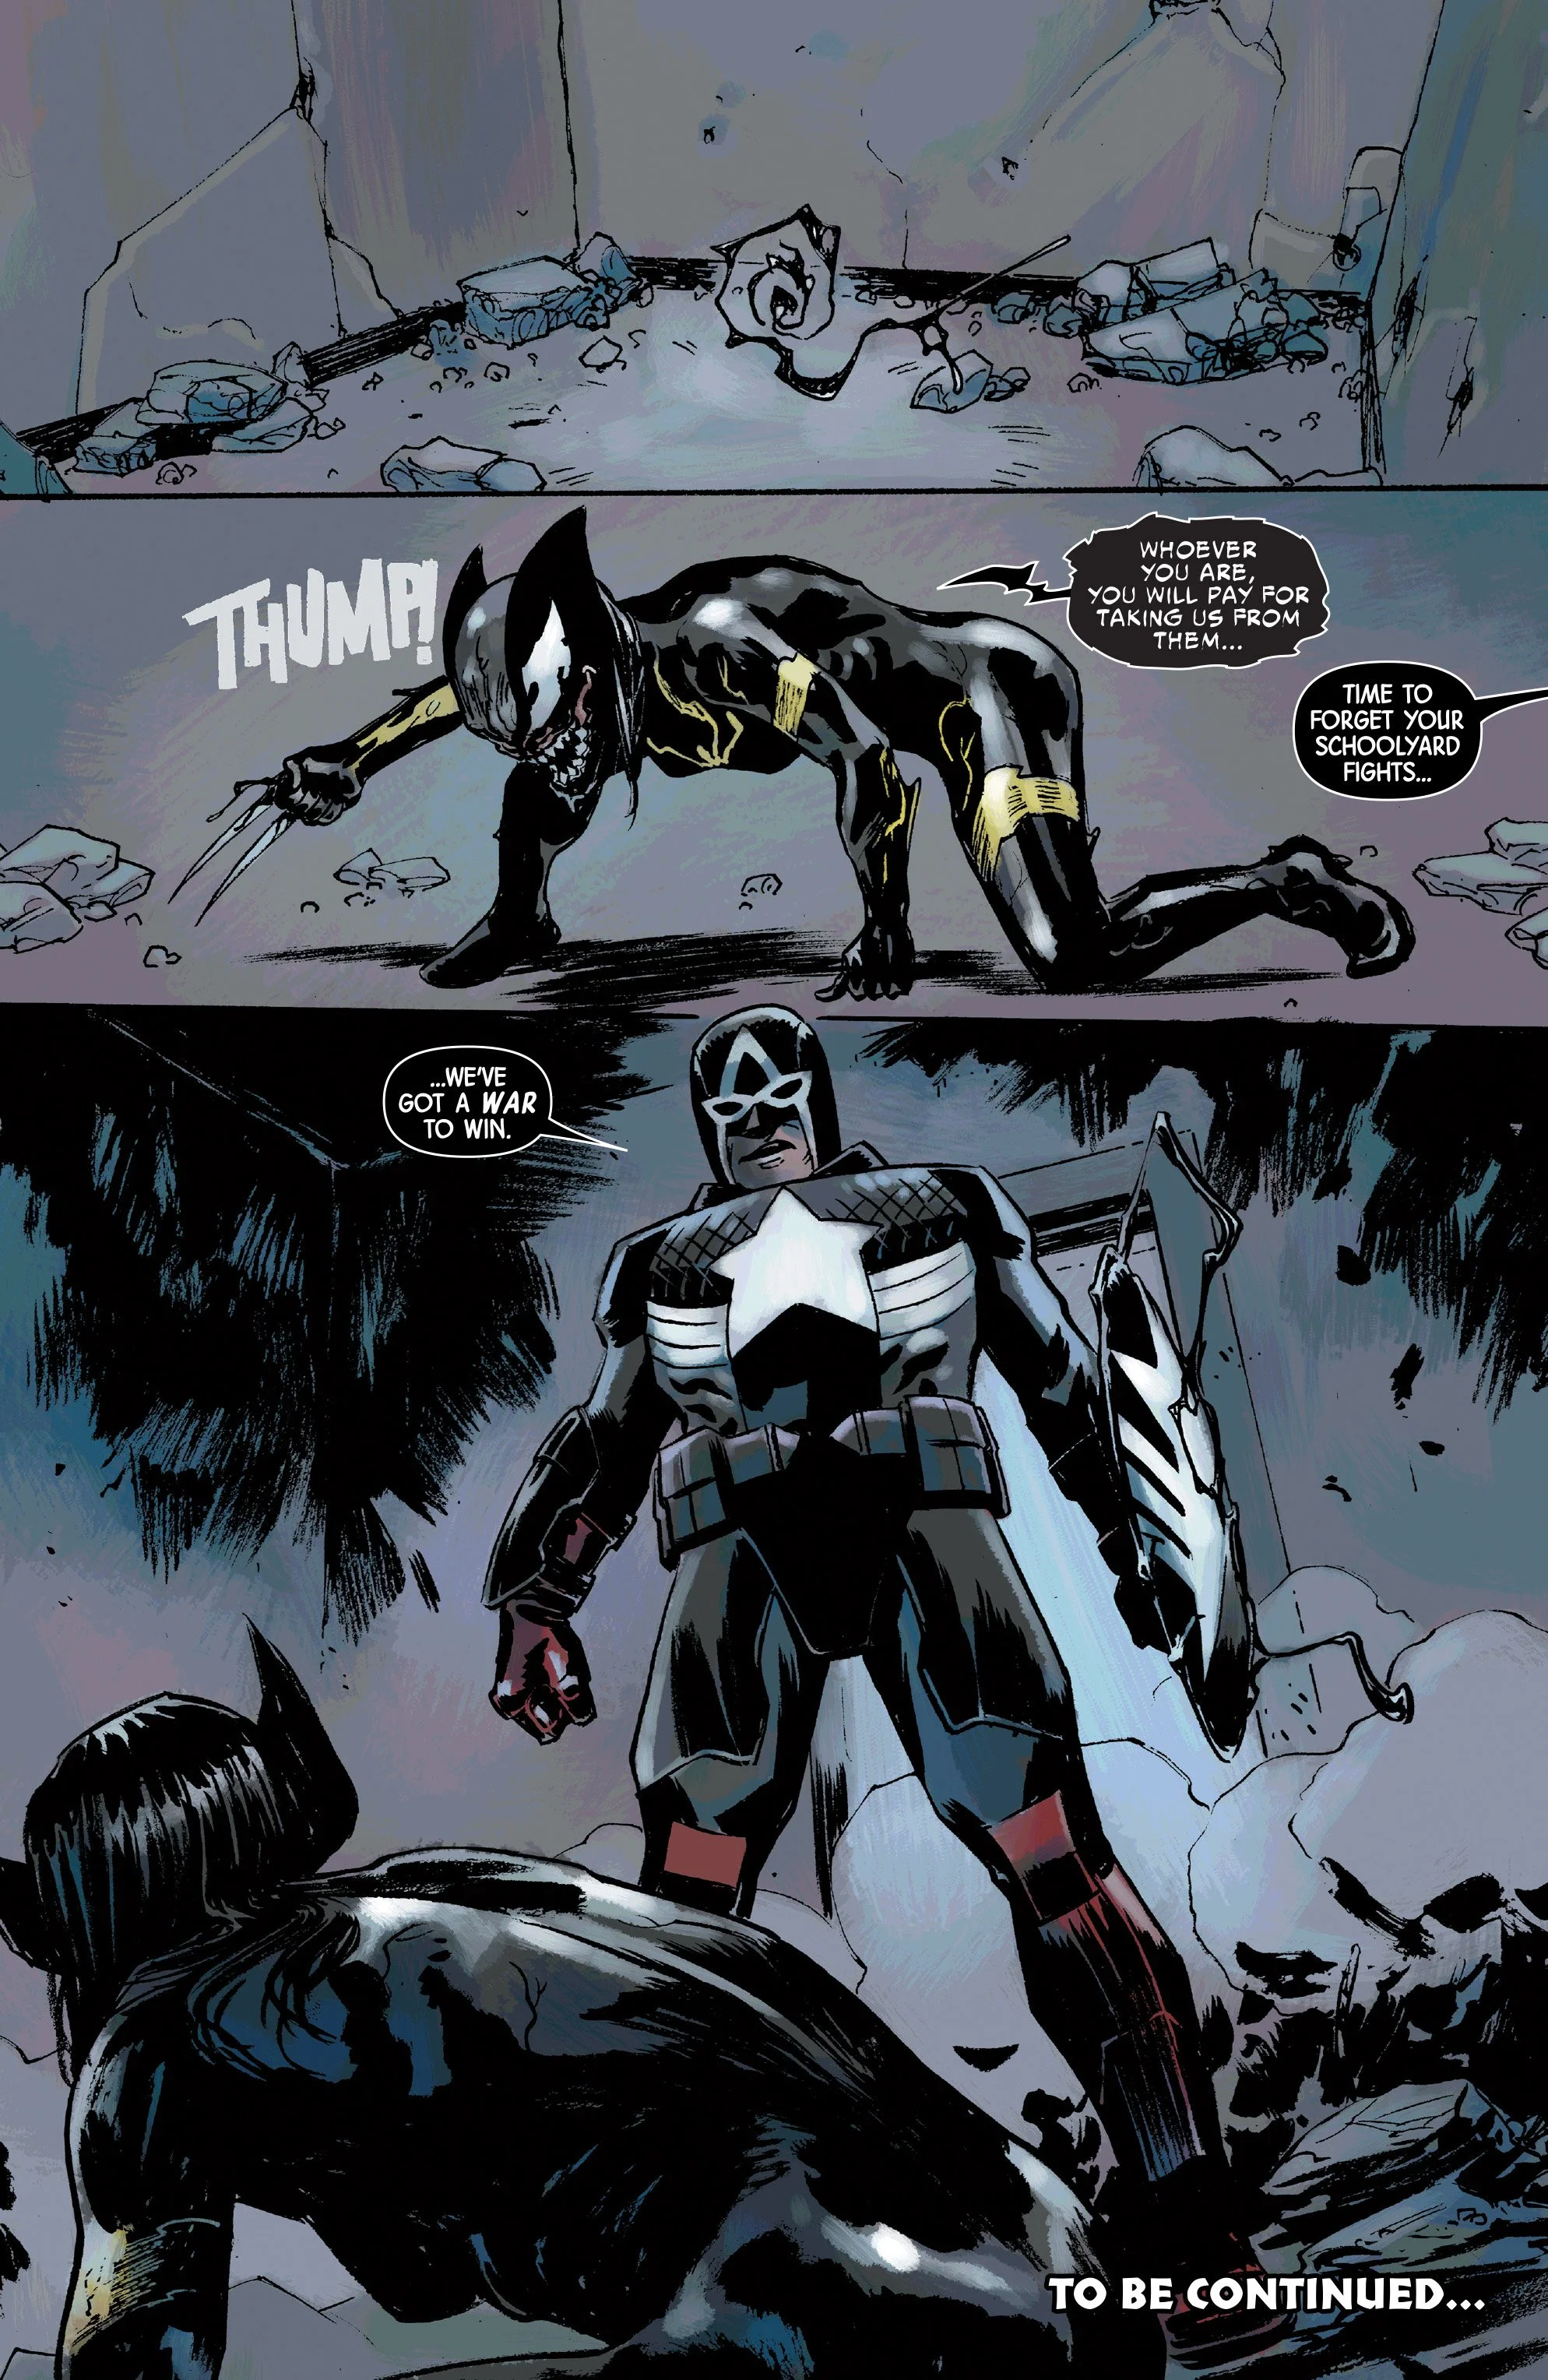 Venomverse: Икс-23 получила способности Венома - фото 4